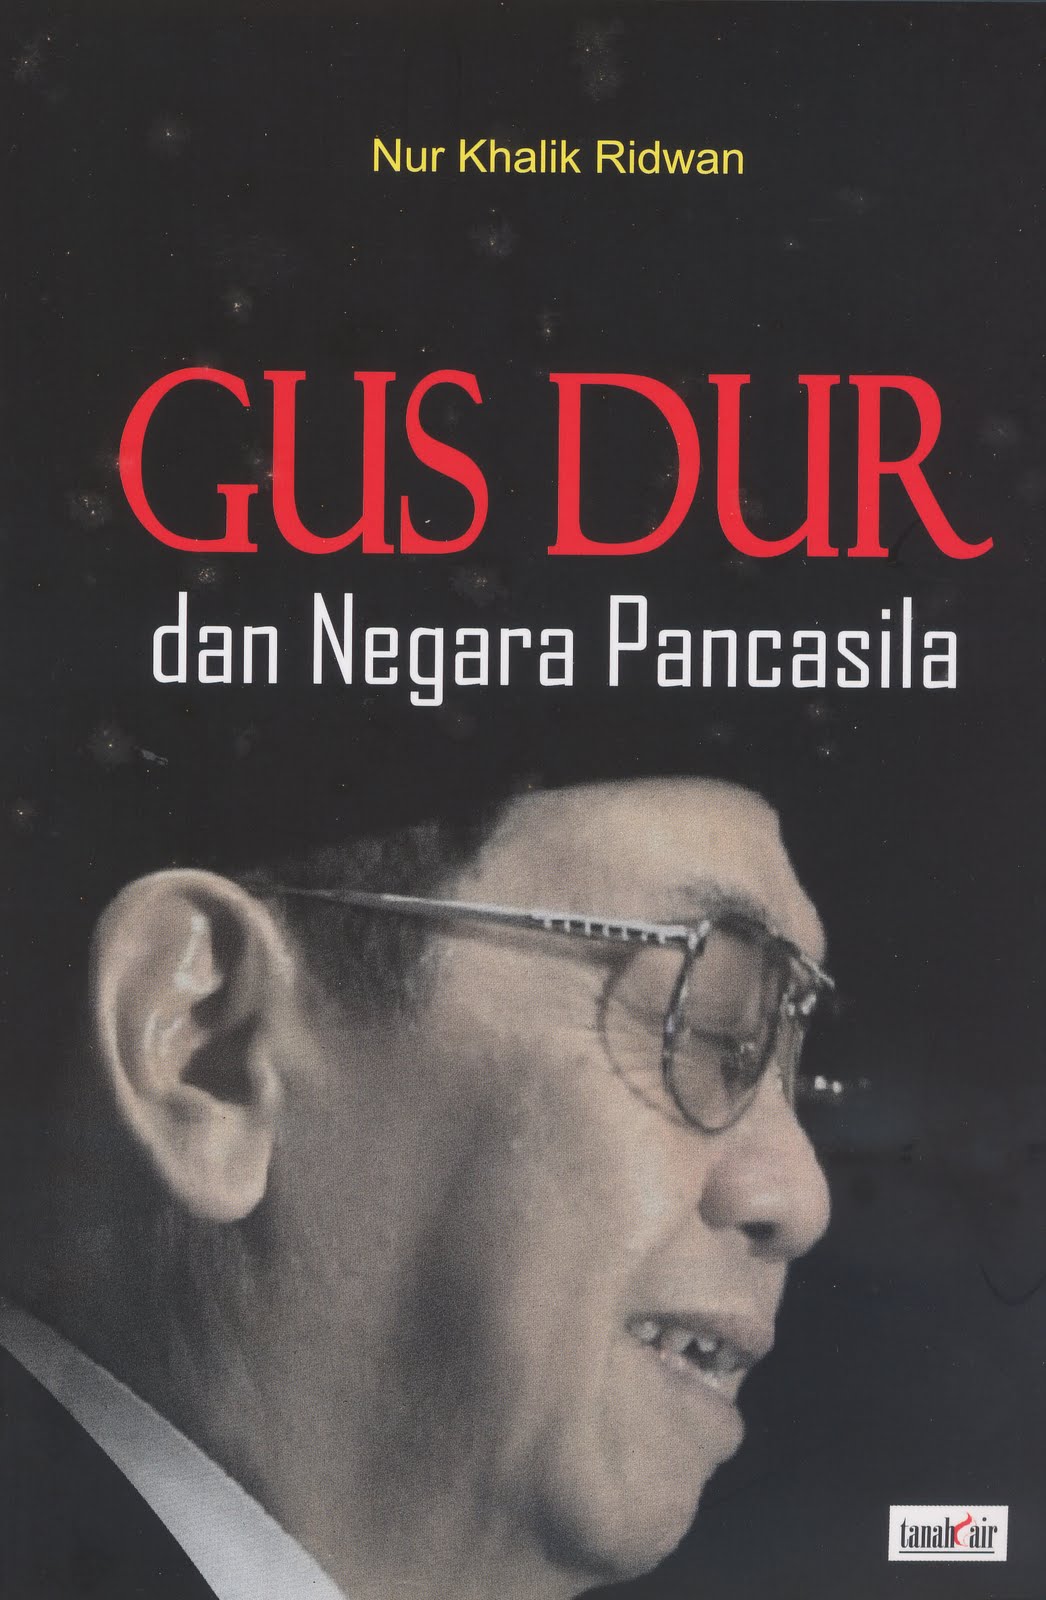 UNIQUE COLLECTION INDONESIA BOOK GUS DUR DAN NEGARA PANCASILA